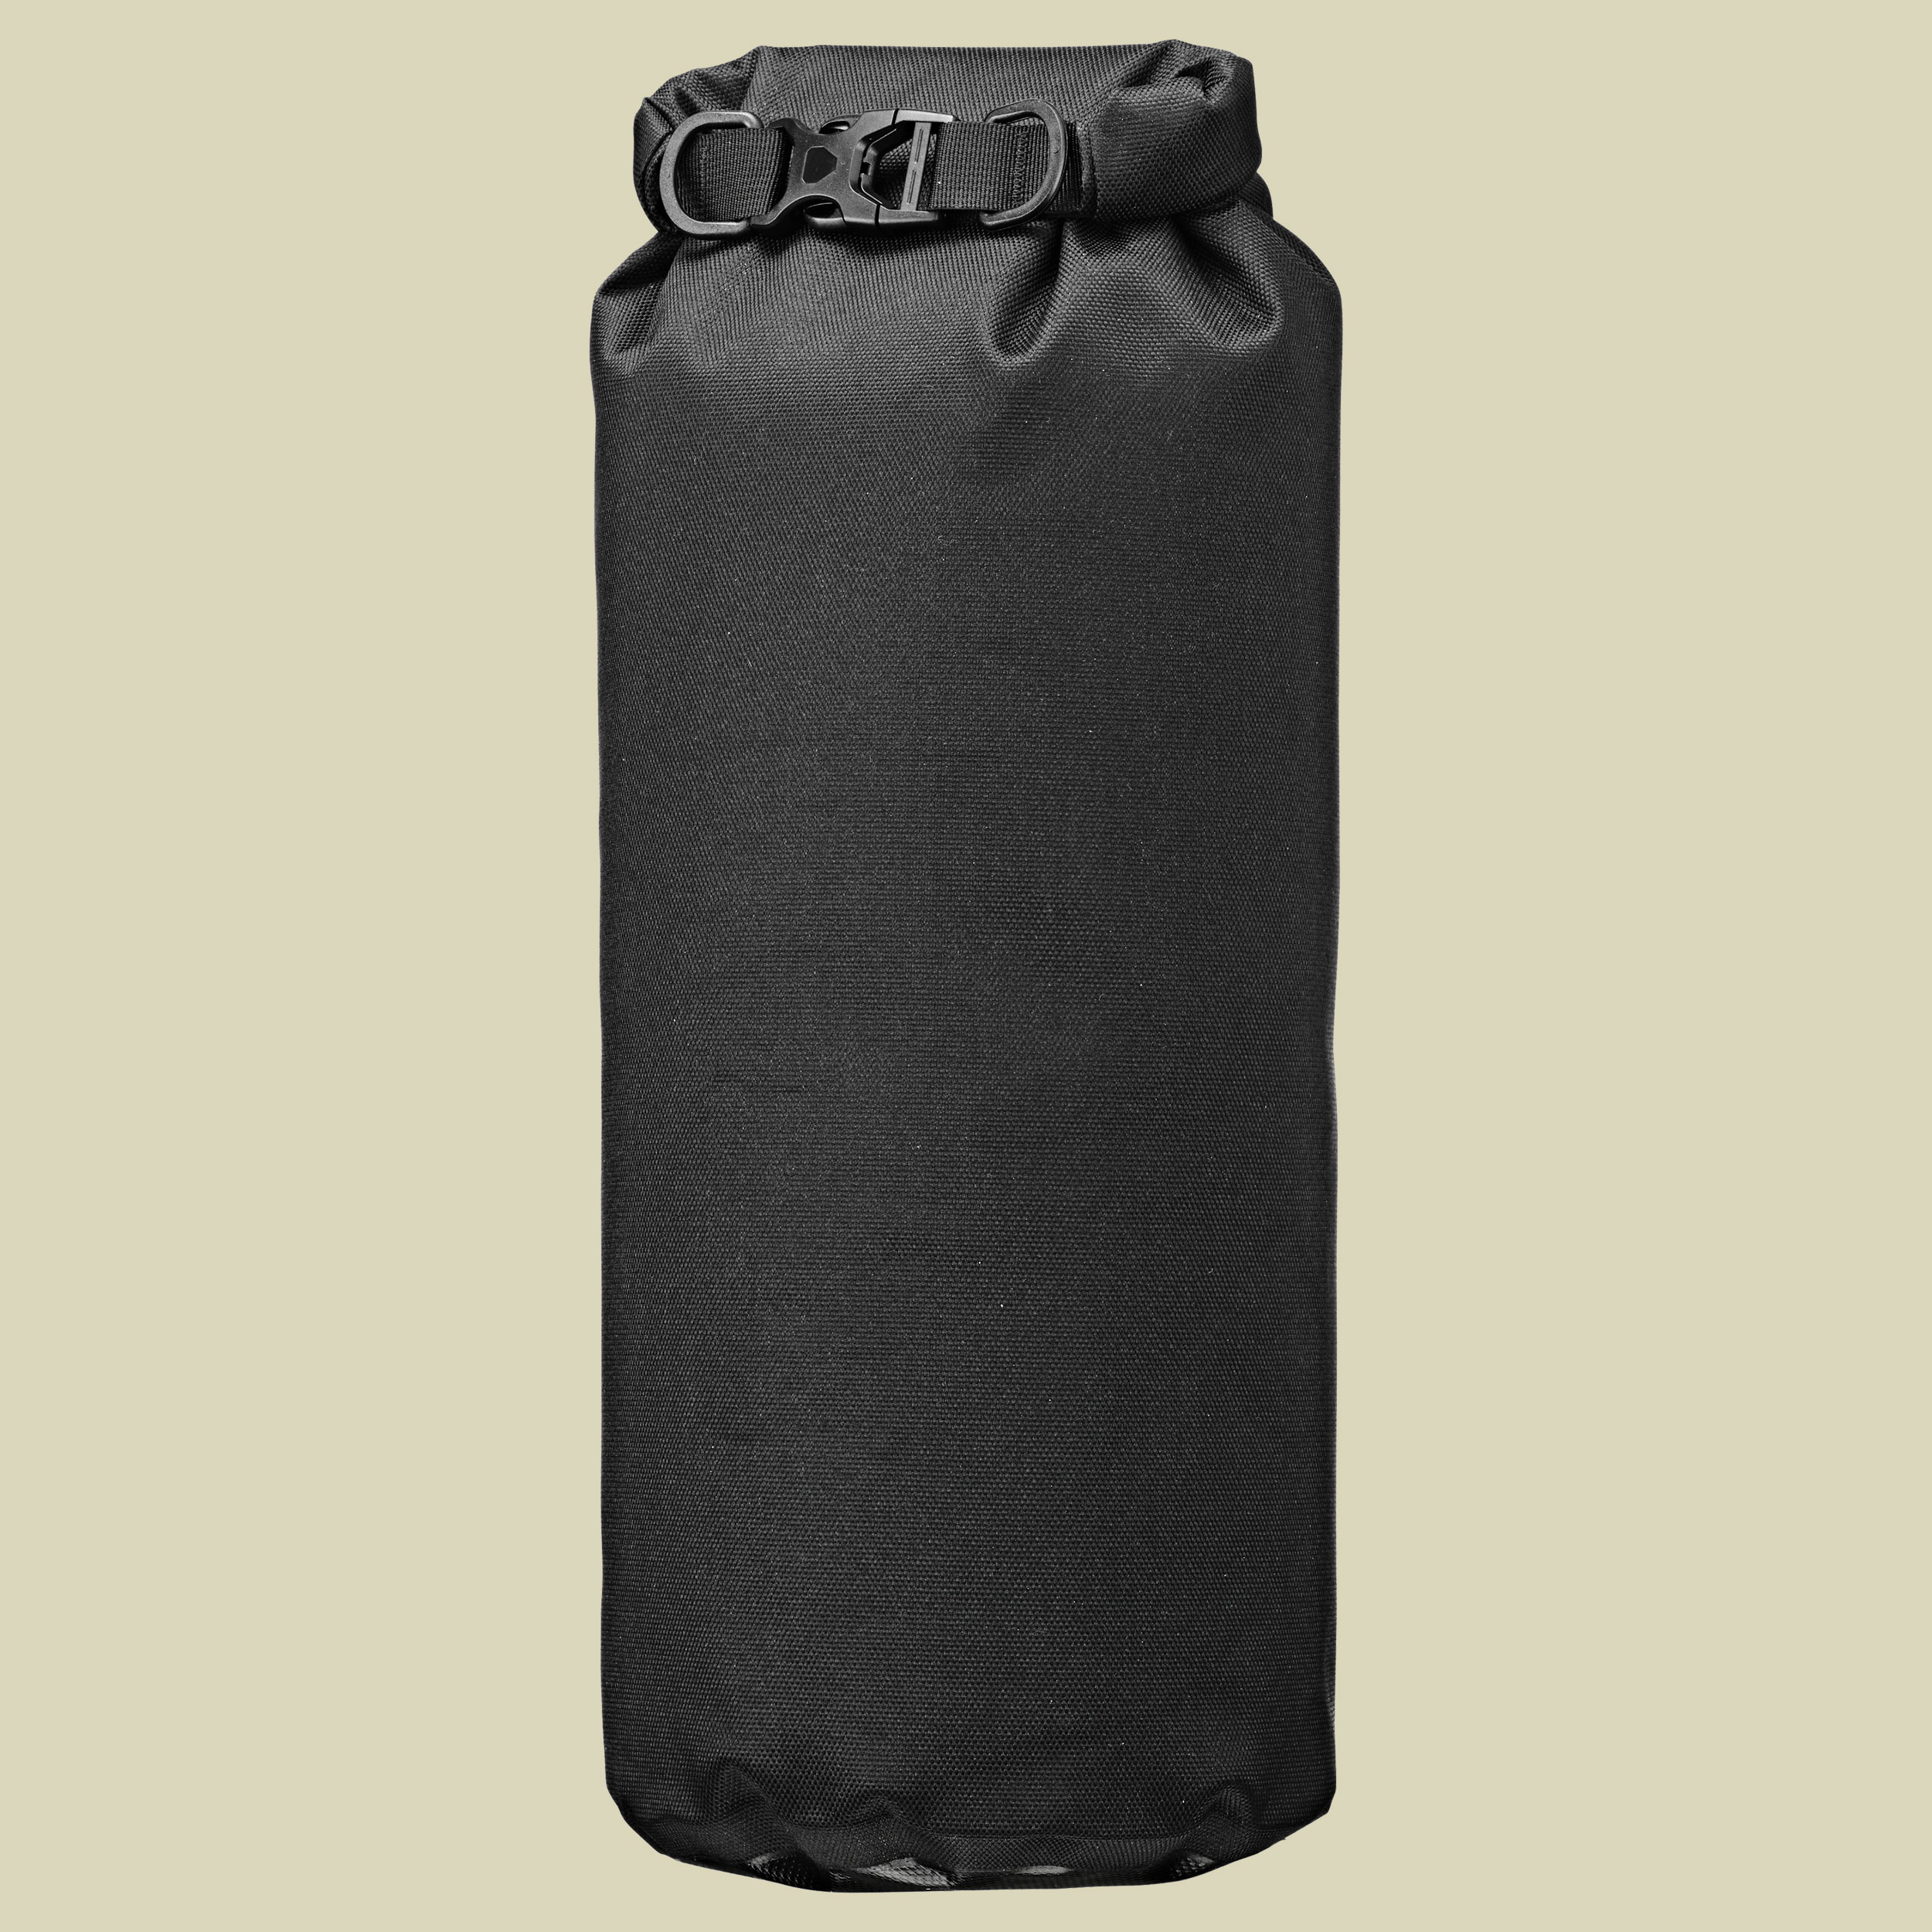 Dry-Bag PS490 Volumen 35 Farbe black-grey